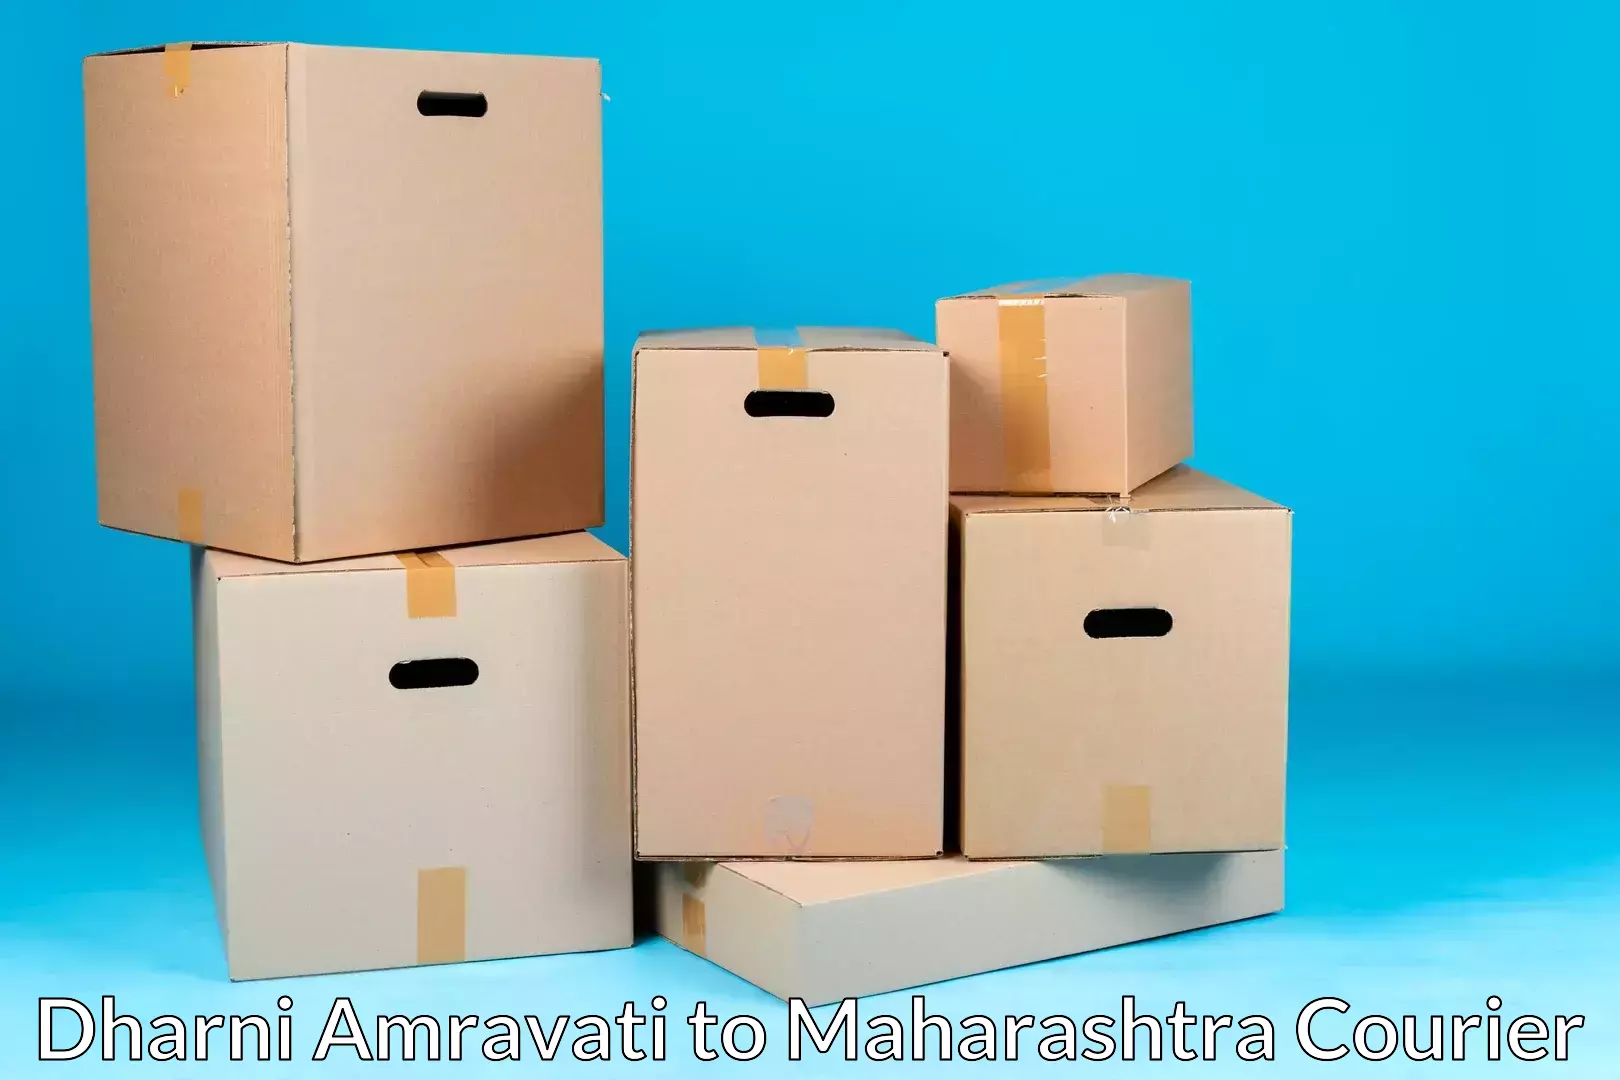 Premium moving services Dharni Amravati to Maharashtra